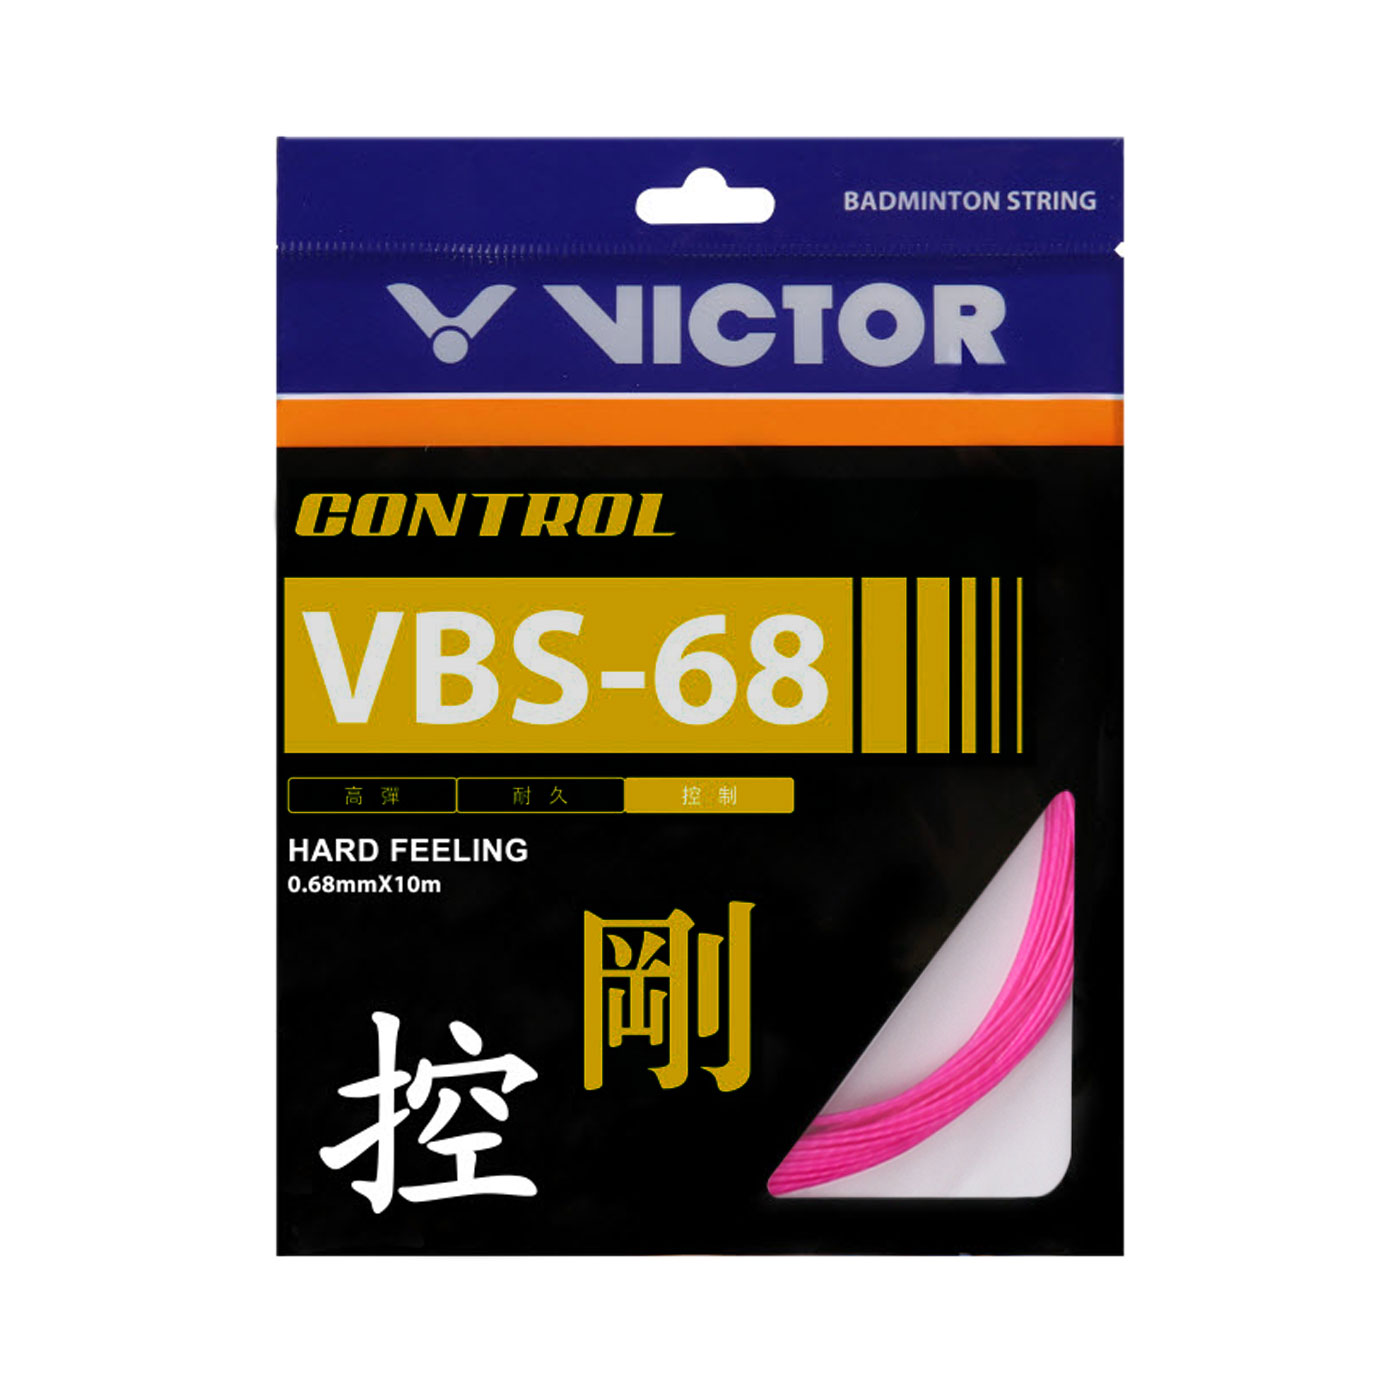 VICTOR 控制羽拍線-剛(盒) VBS-68-Q-10 SETS - 桃紅